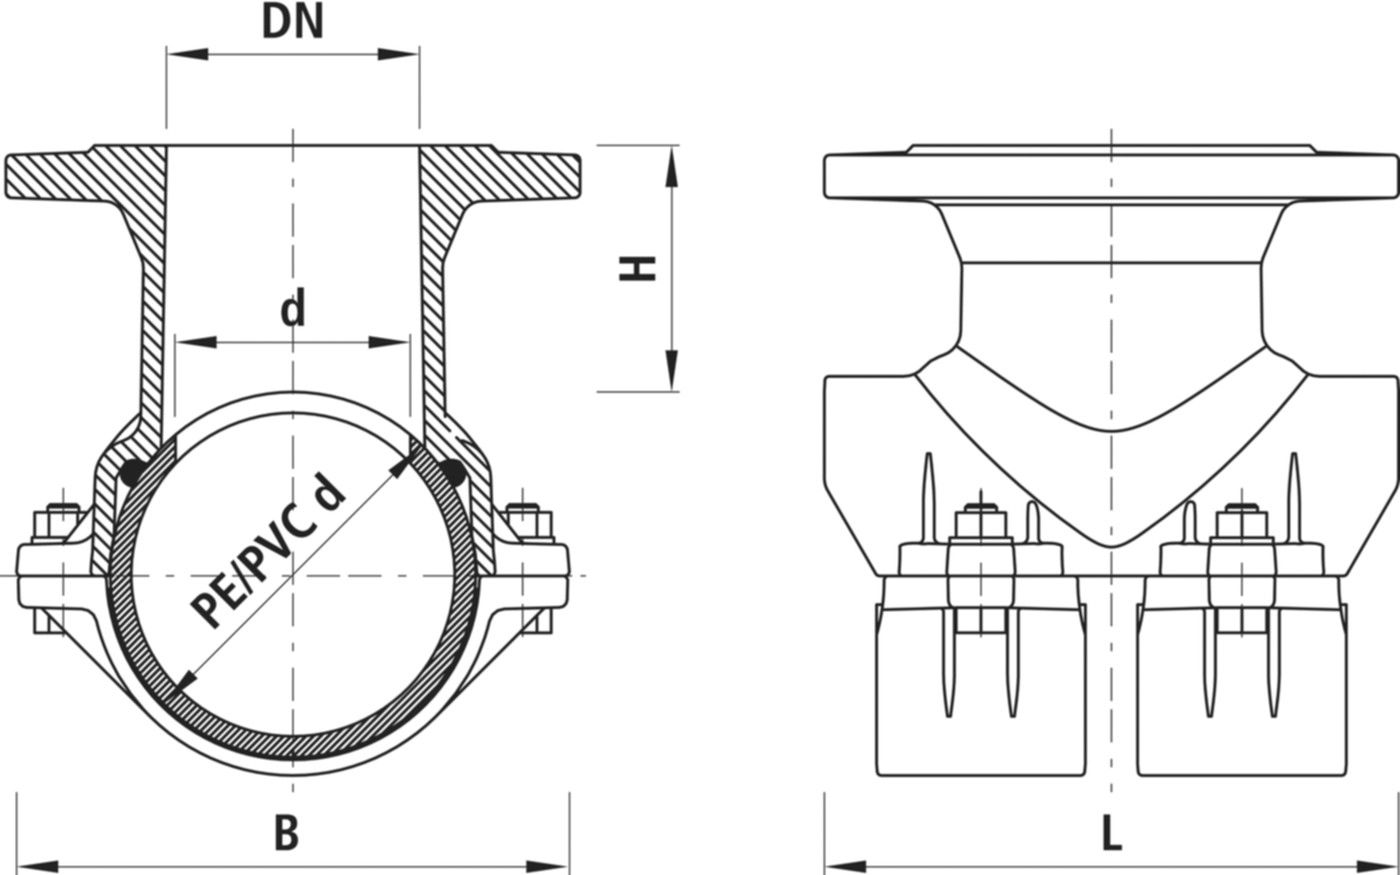 Haku-Anbohrschelle mit Flansch 5230 d 225mm / DN 80 - Hawle Hausanschluss- und Anbohrarmaturen